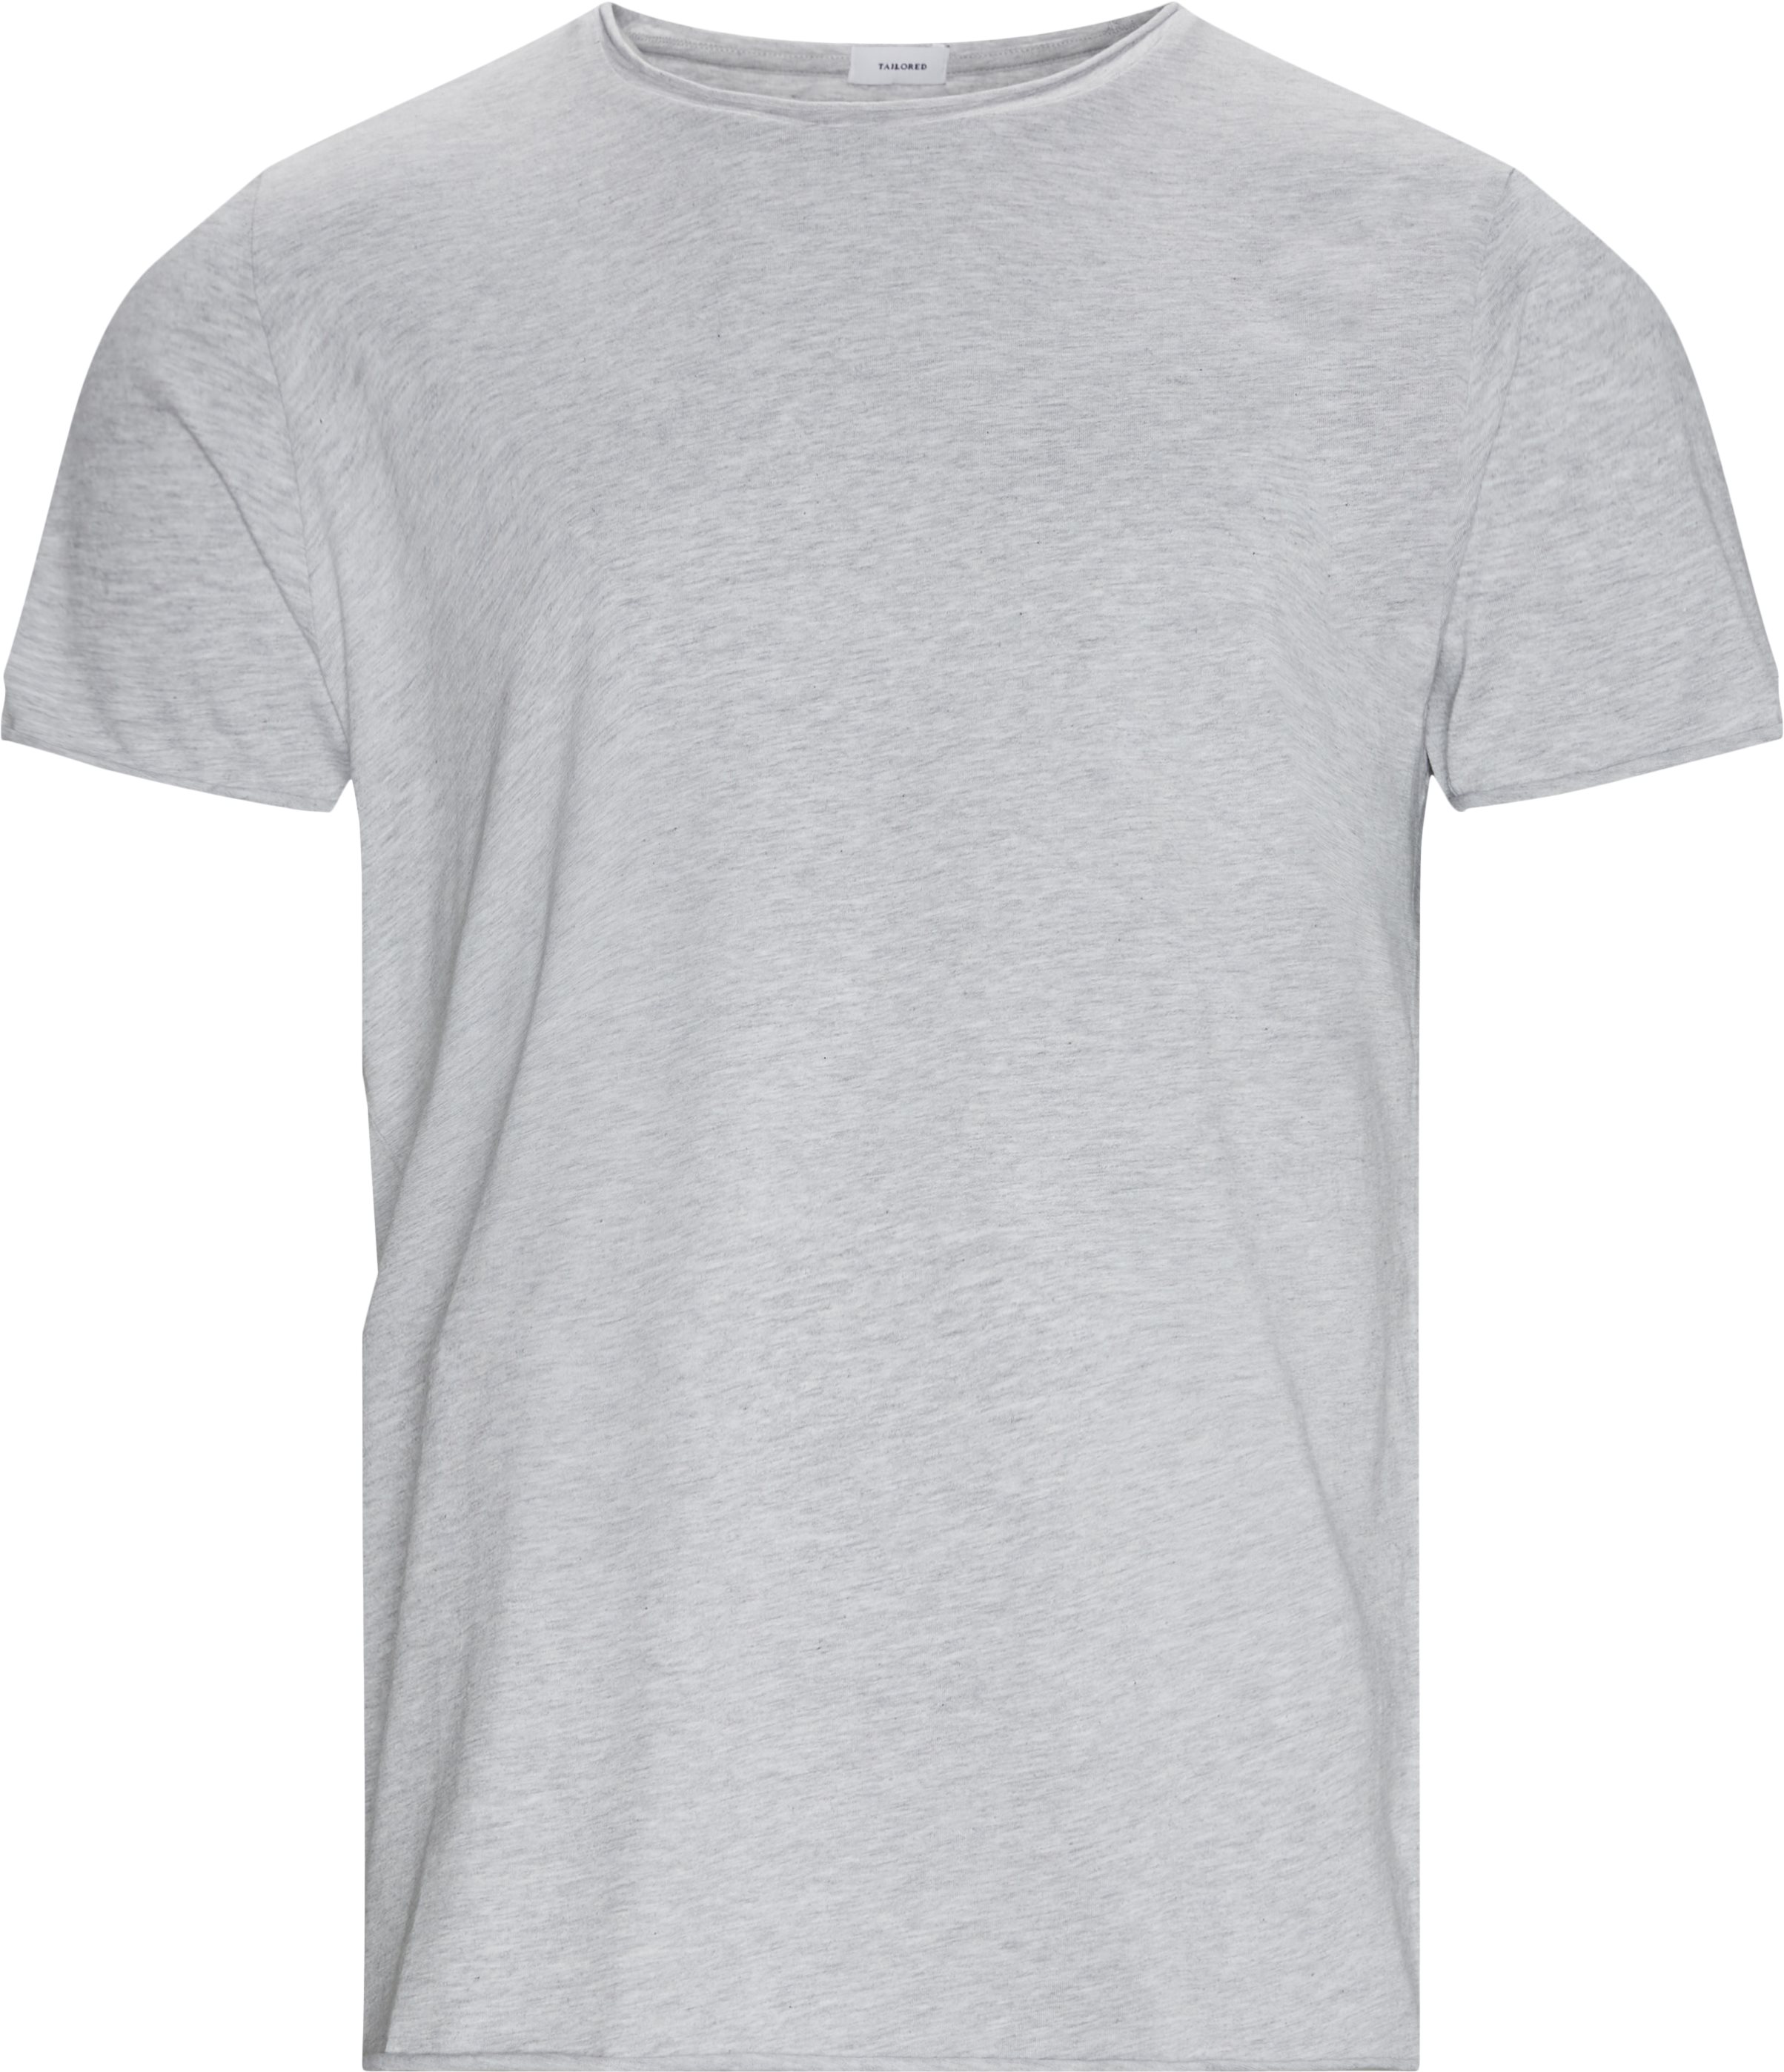 Raw Edge Tee - T-shirts - Regular fit - Grå